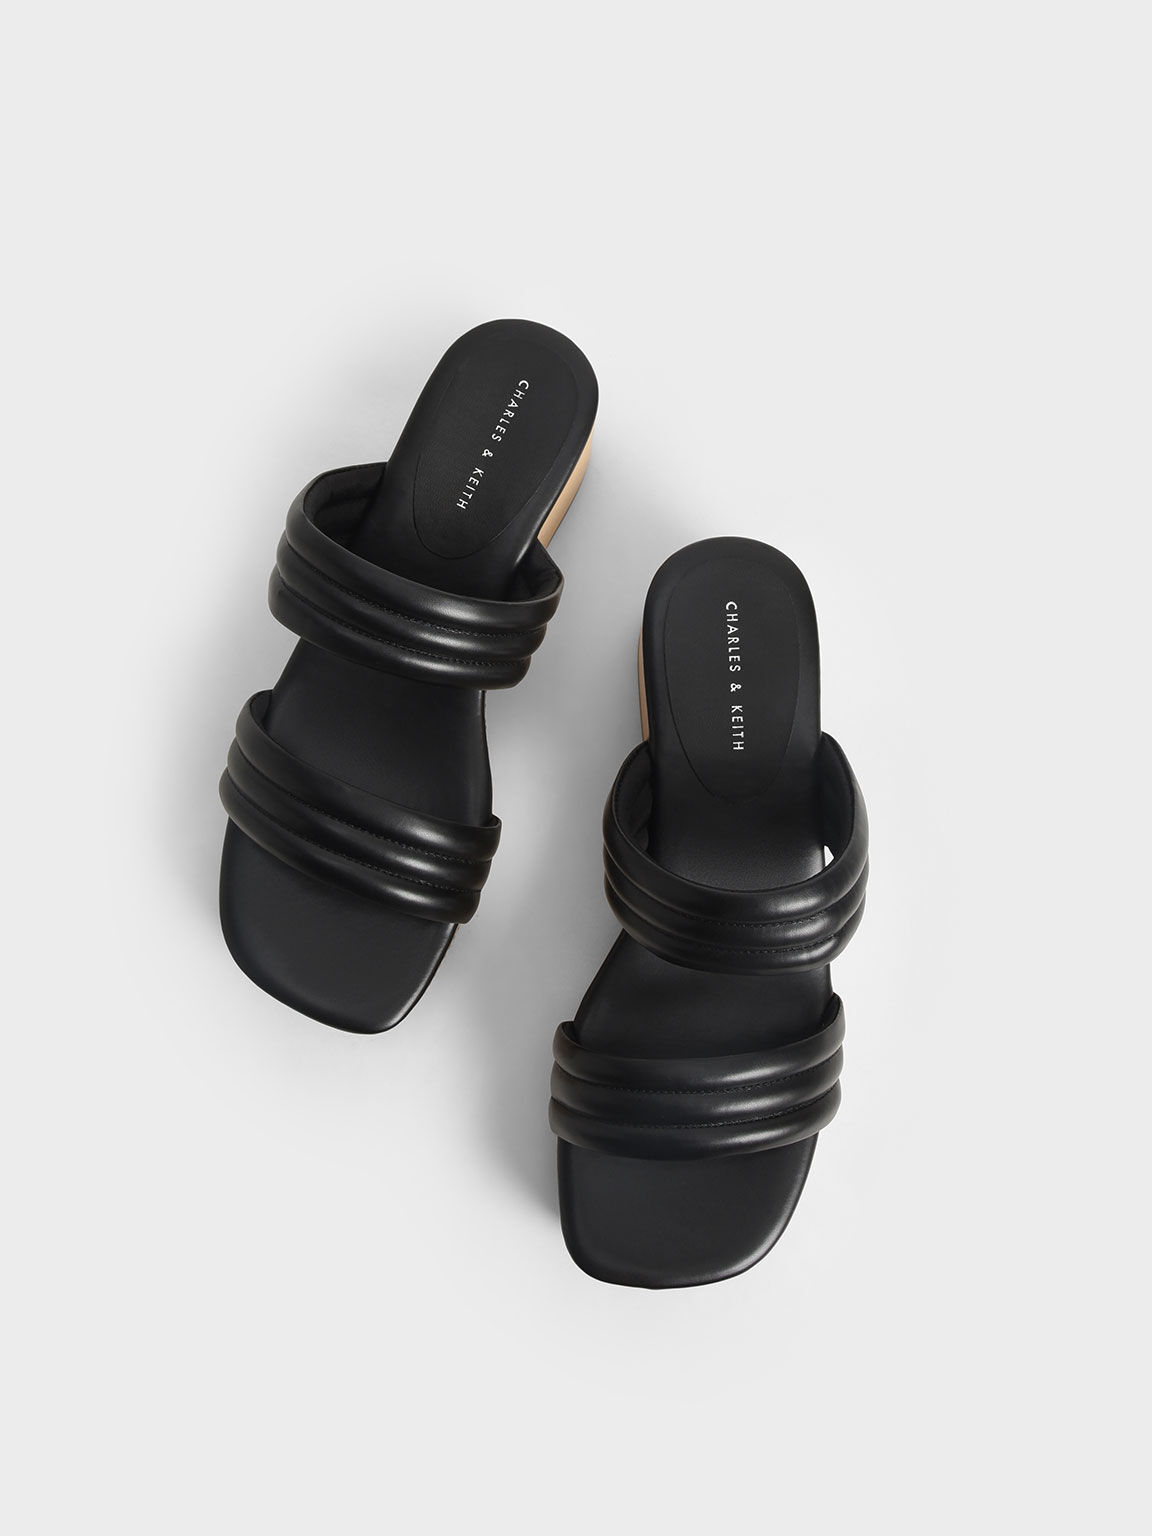 Tubular Platform Sandals, Black, hi-res